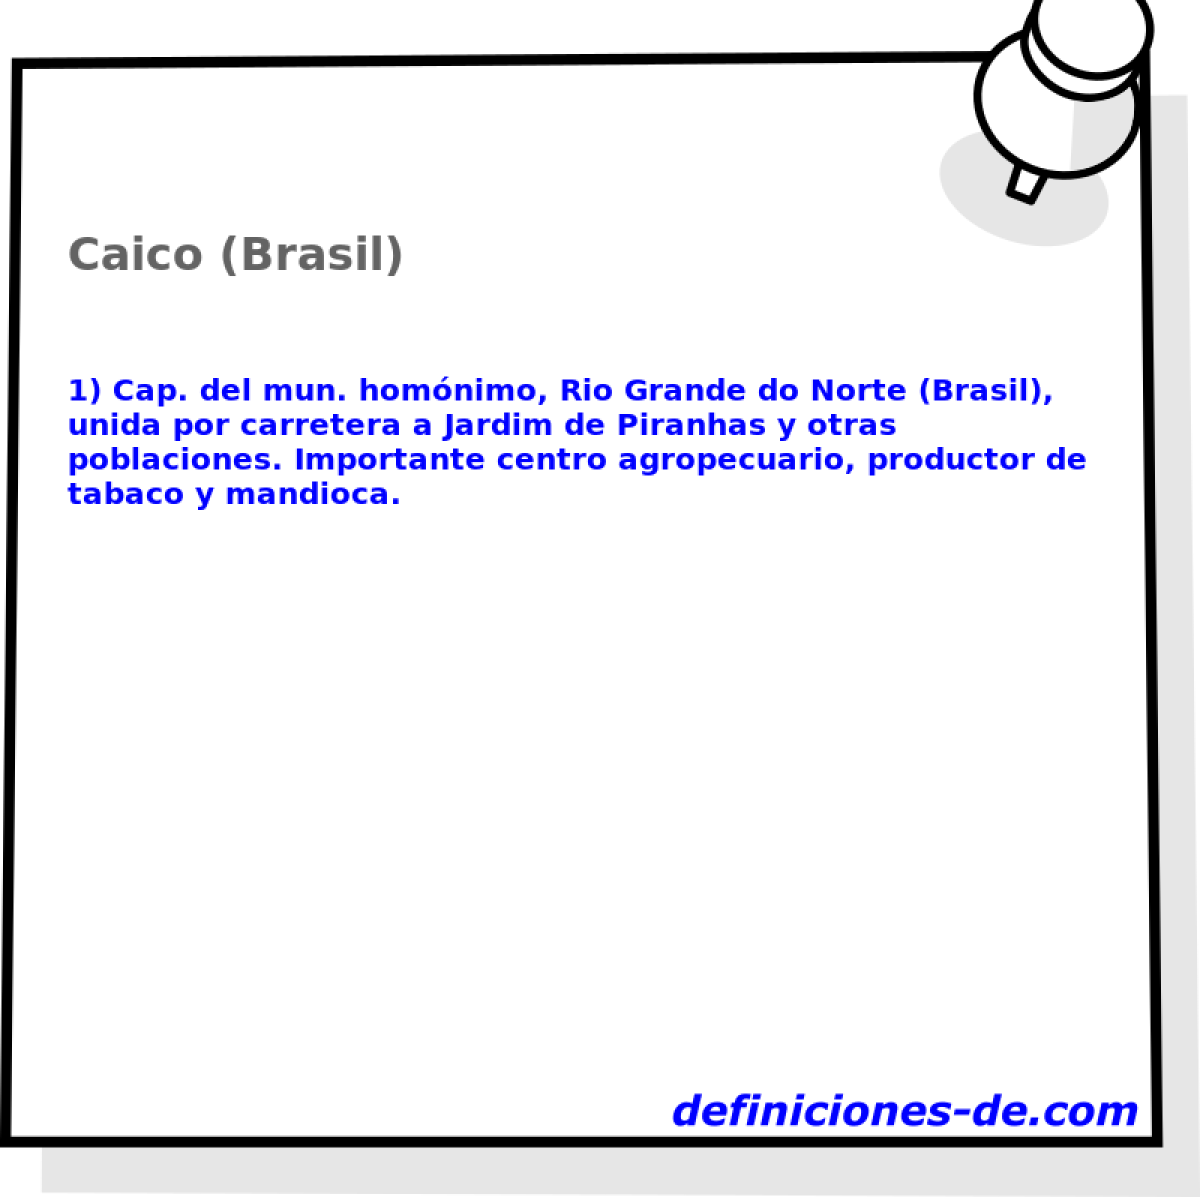 Caico (Brasil) 